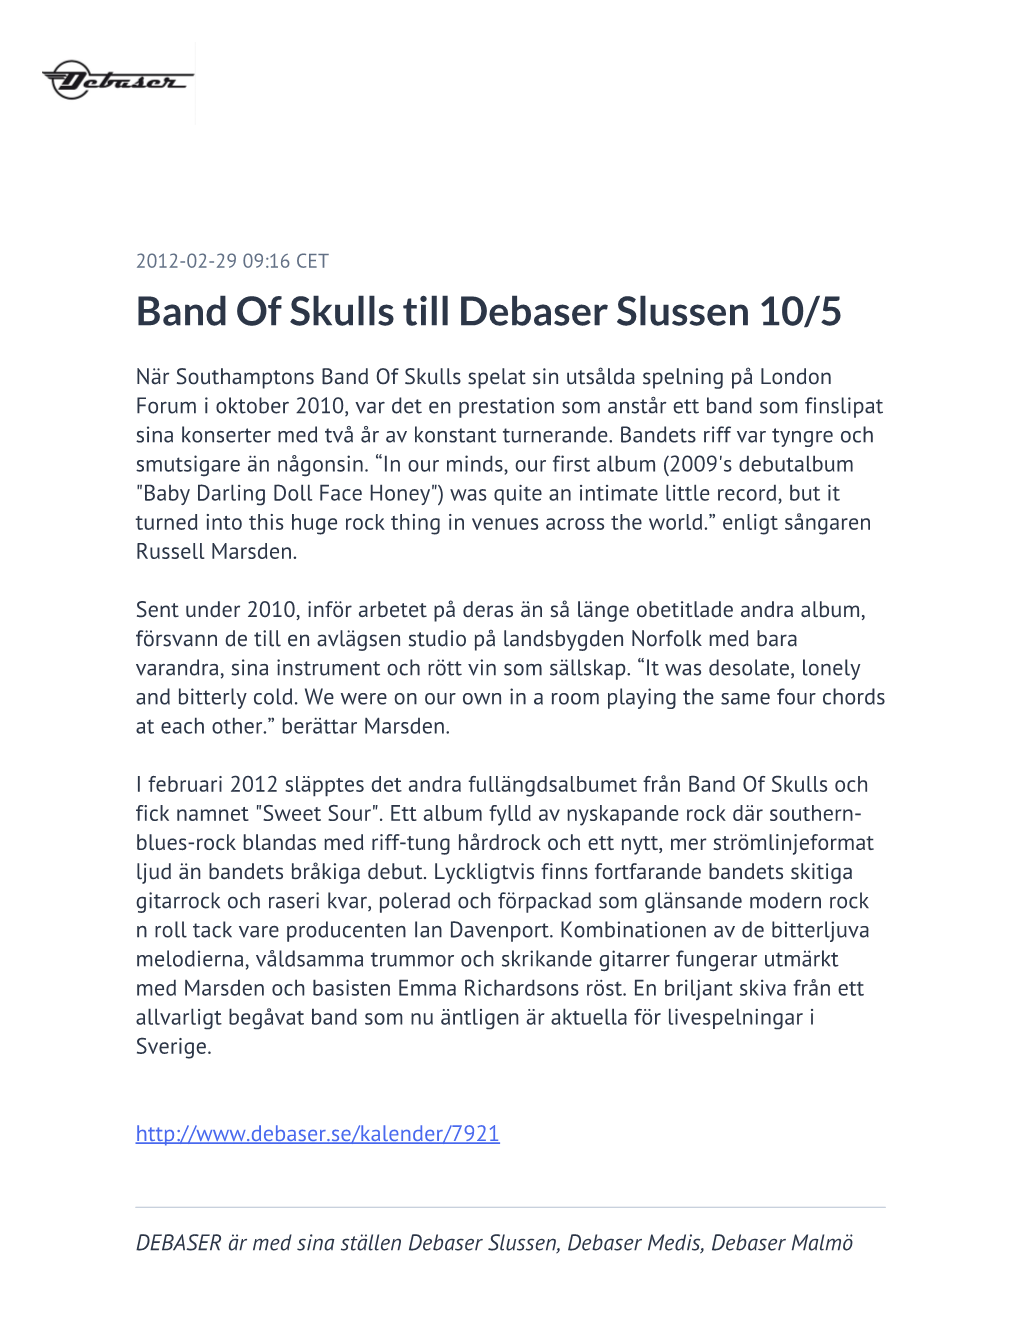 Band of Skulls Till Debaser Slussen 10/5